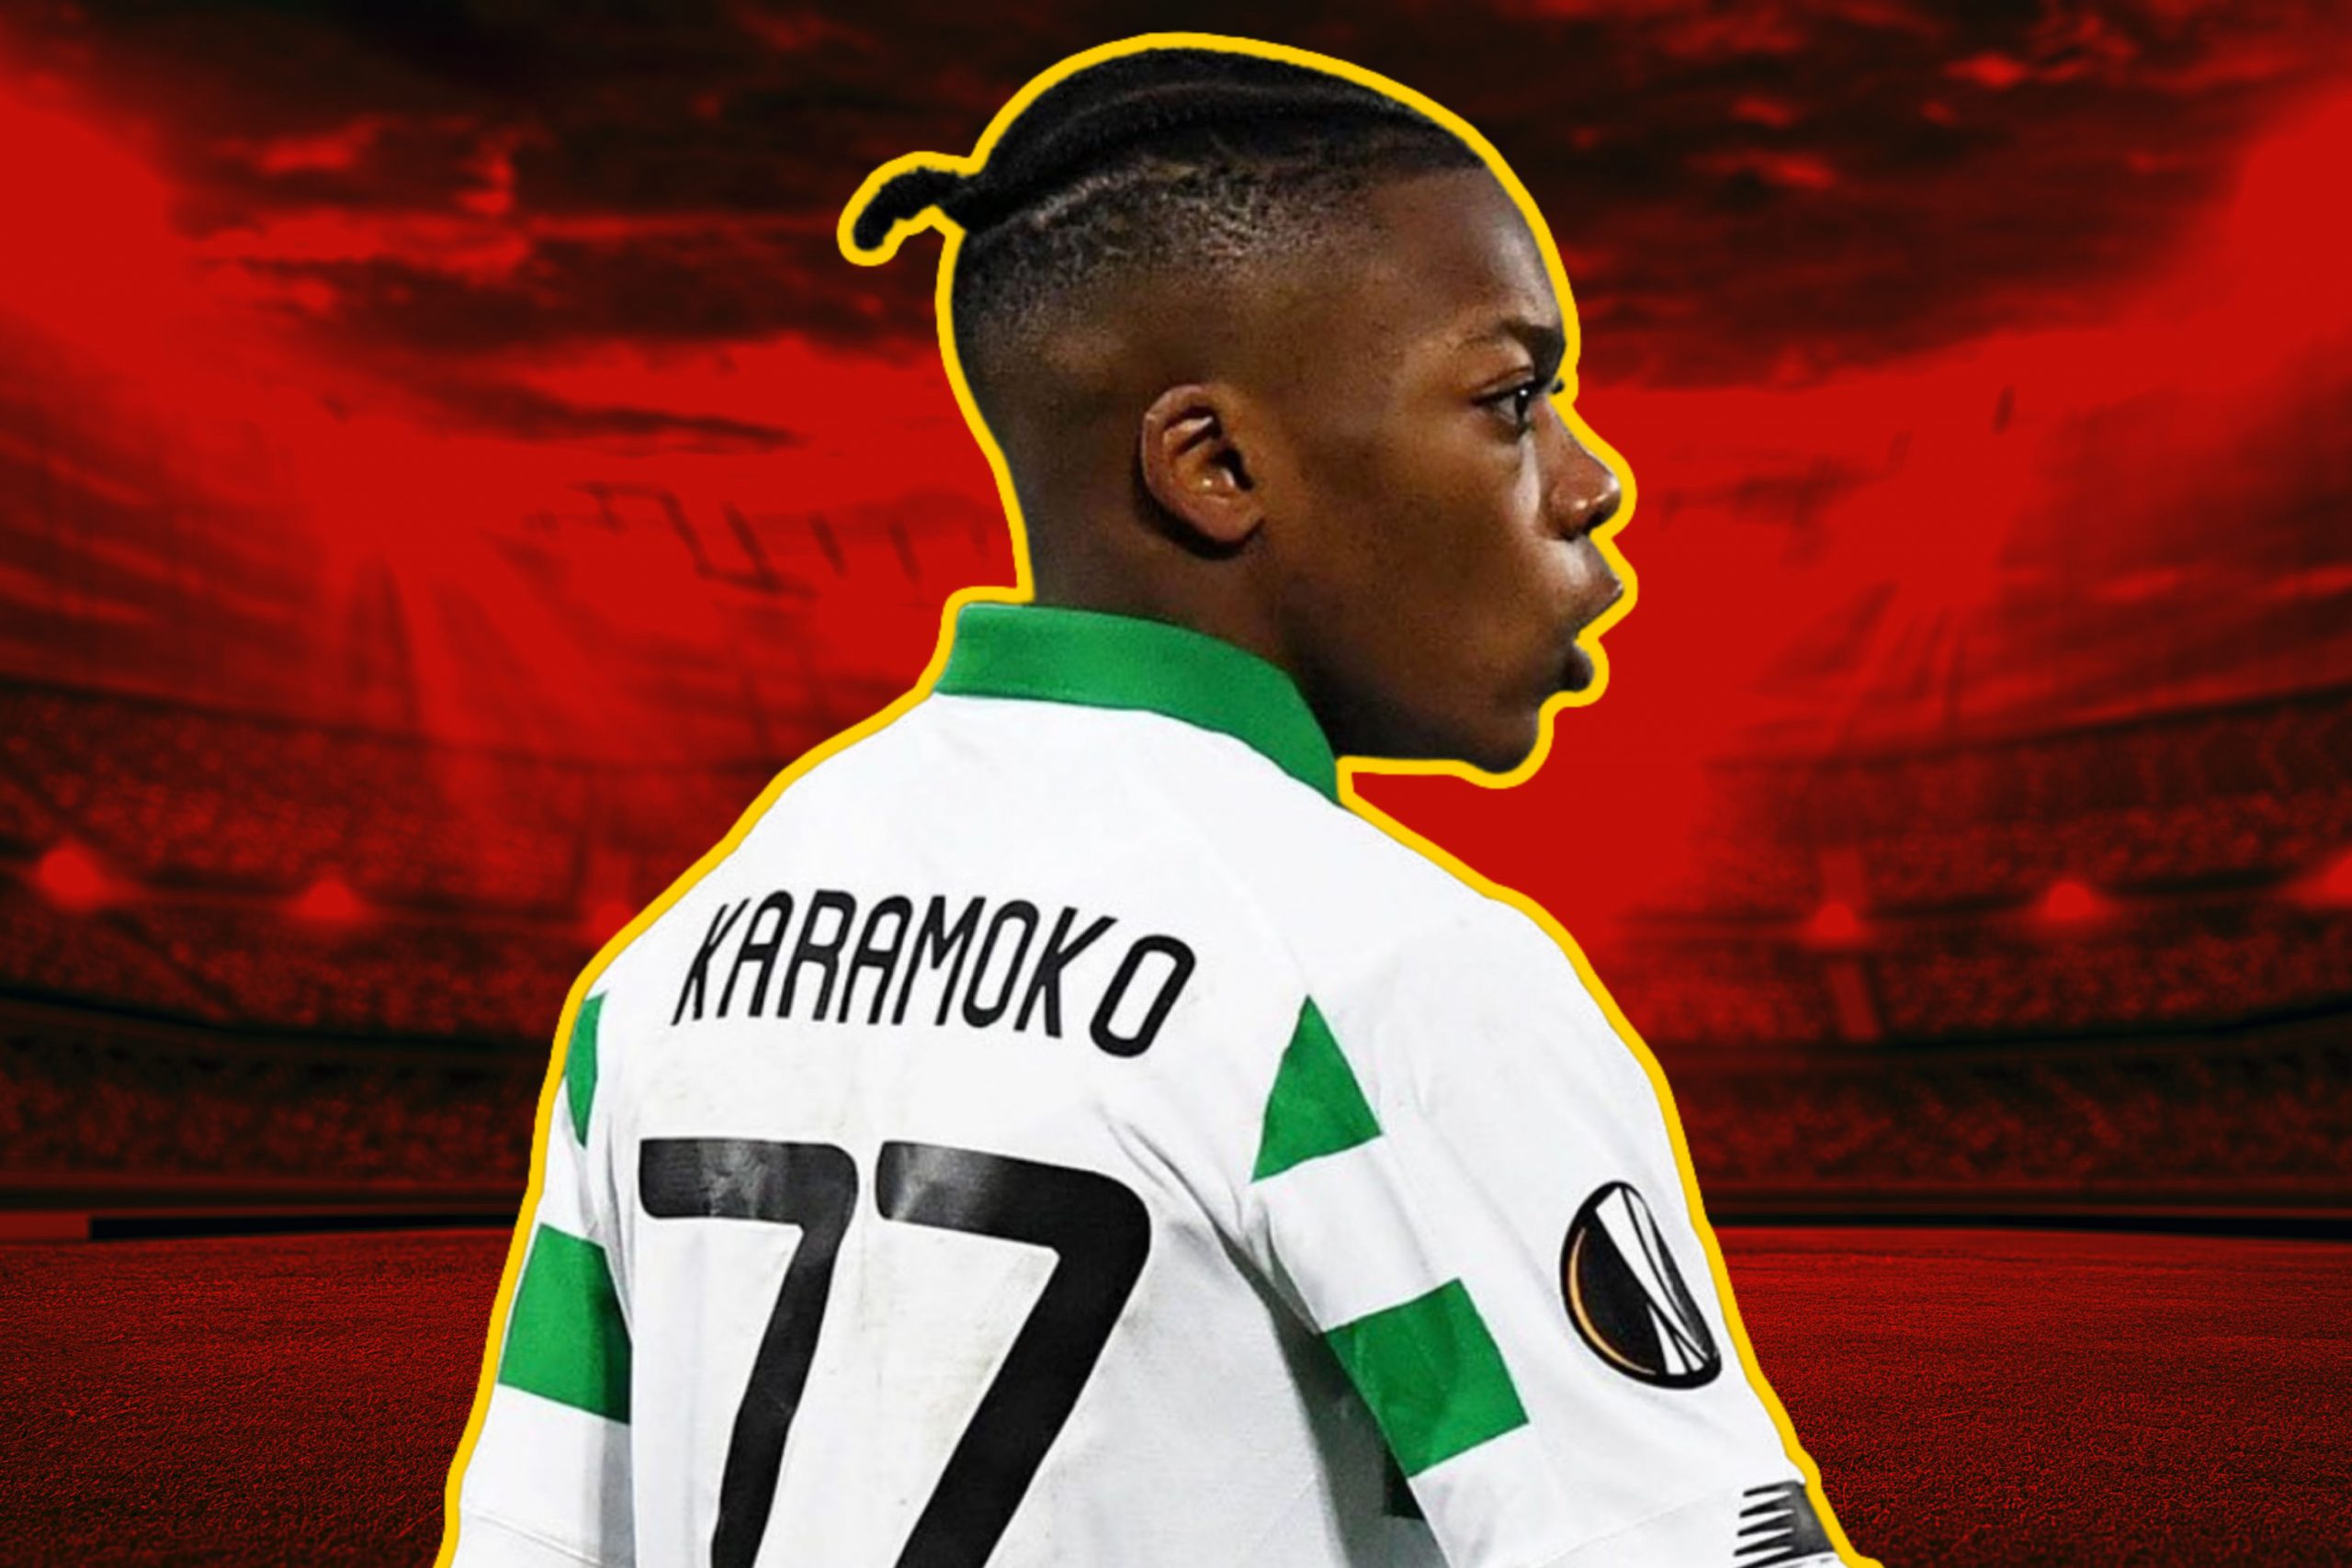 Barcelona star in the comments as Karamoko Dembele celebrates 1st senior goal for Celtic on Instagram